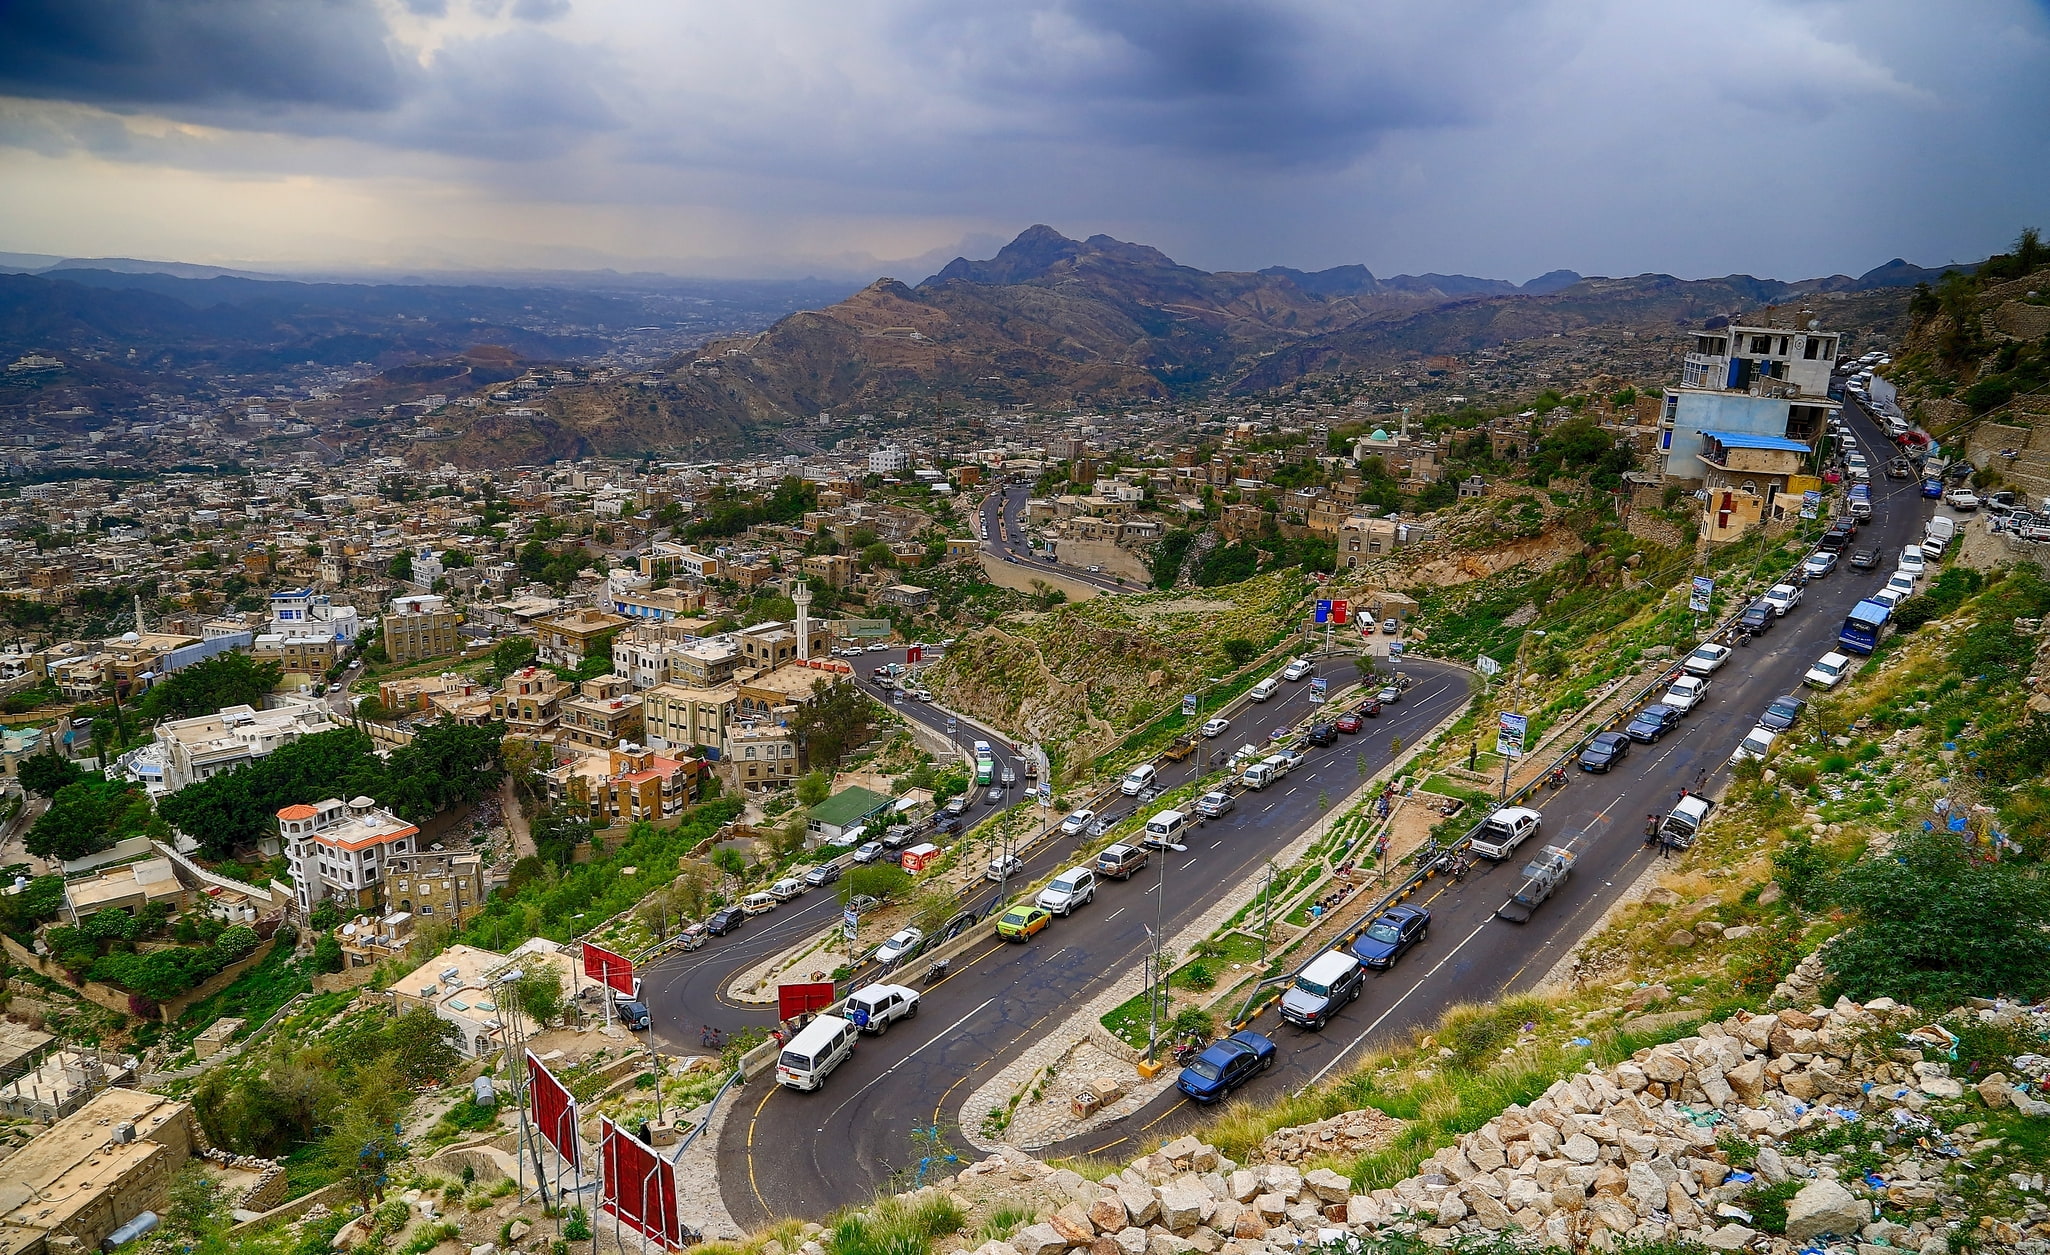 Taiz, Yemen